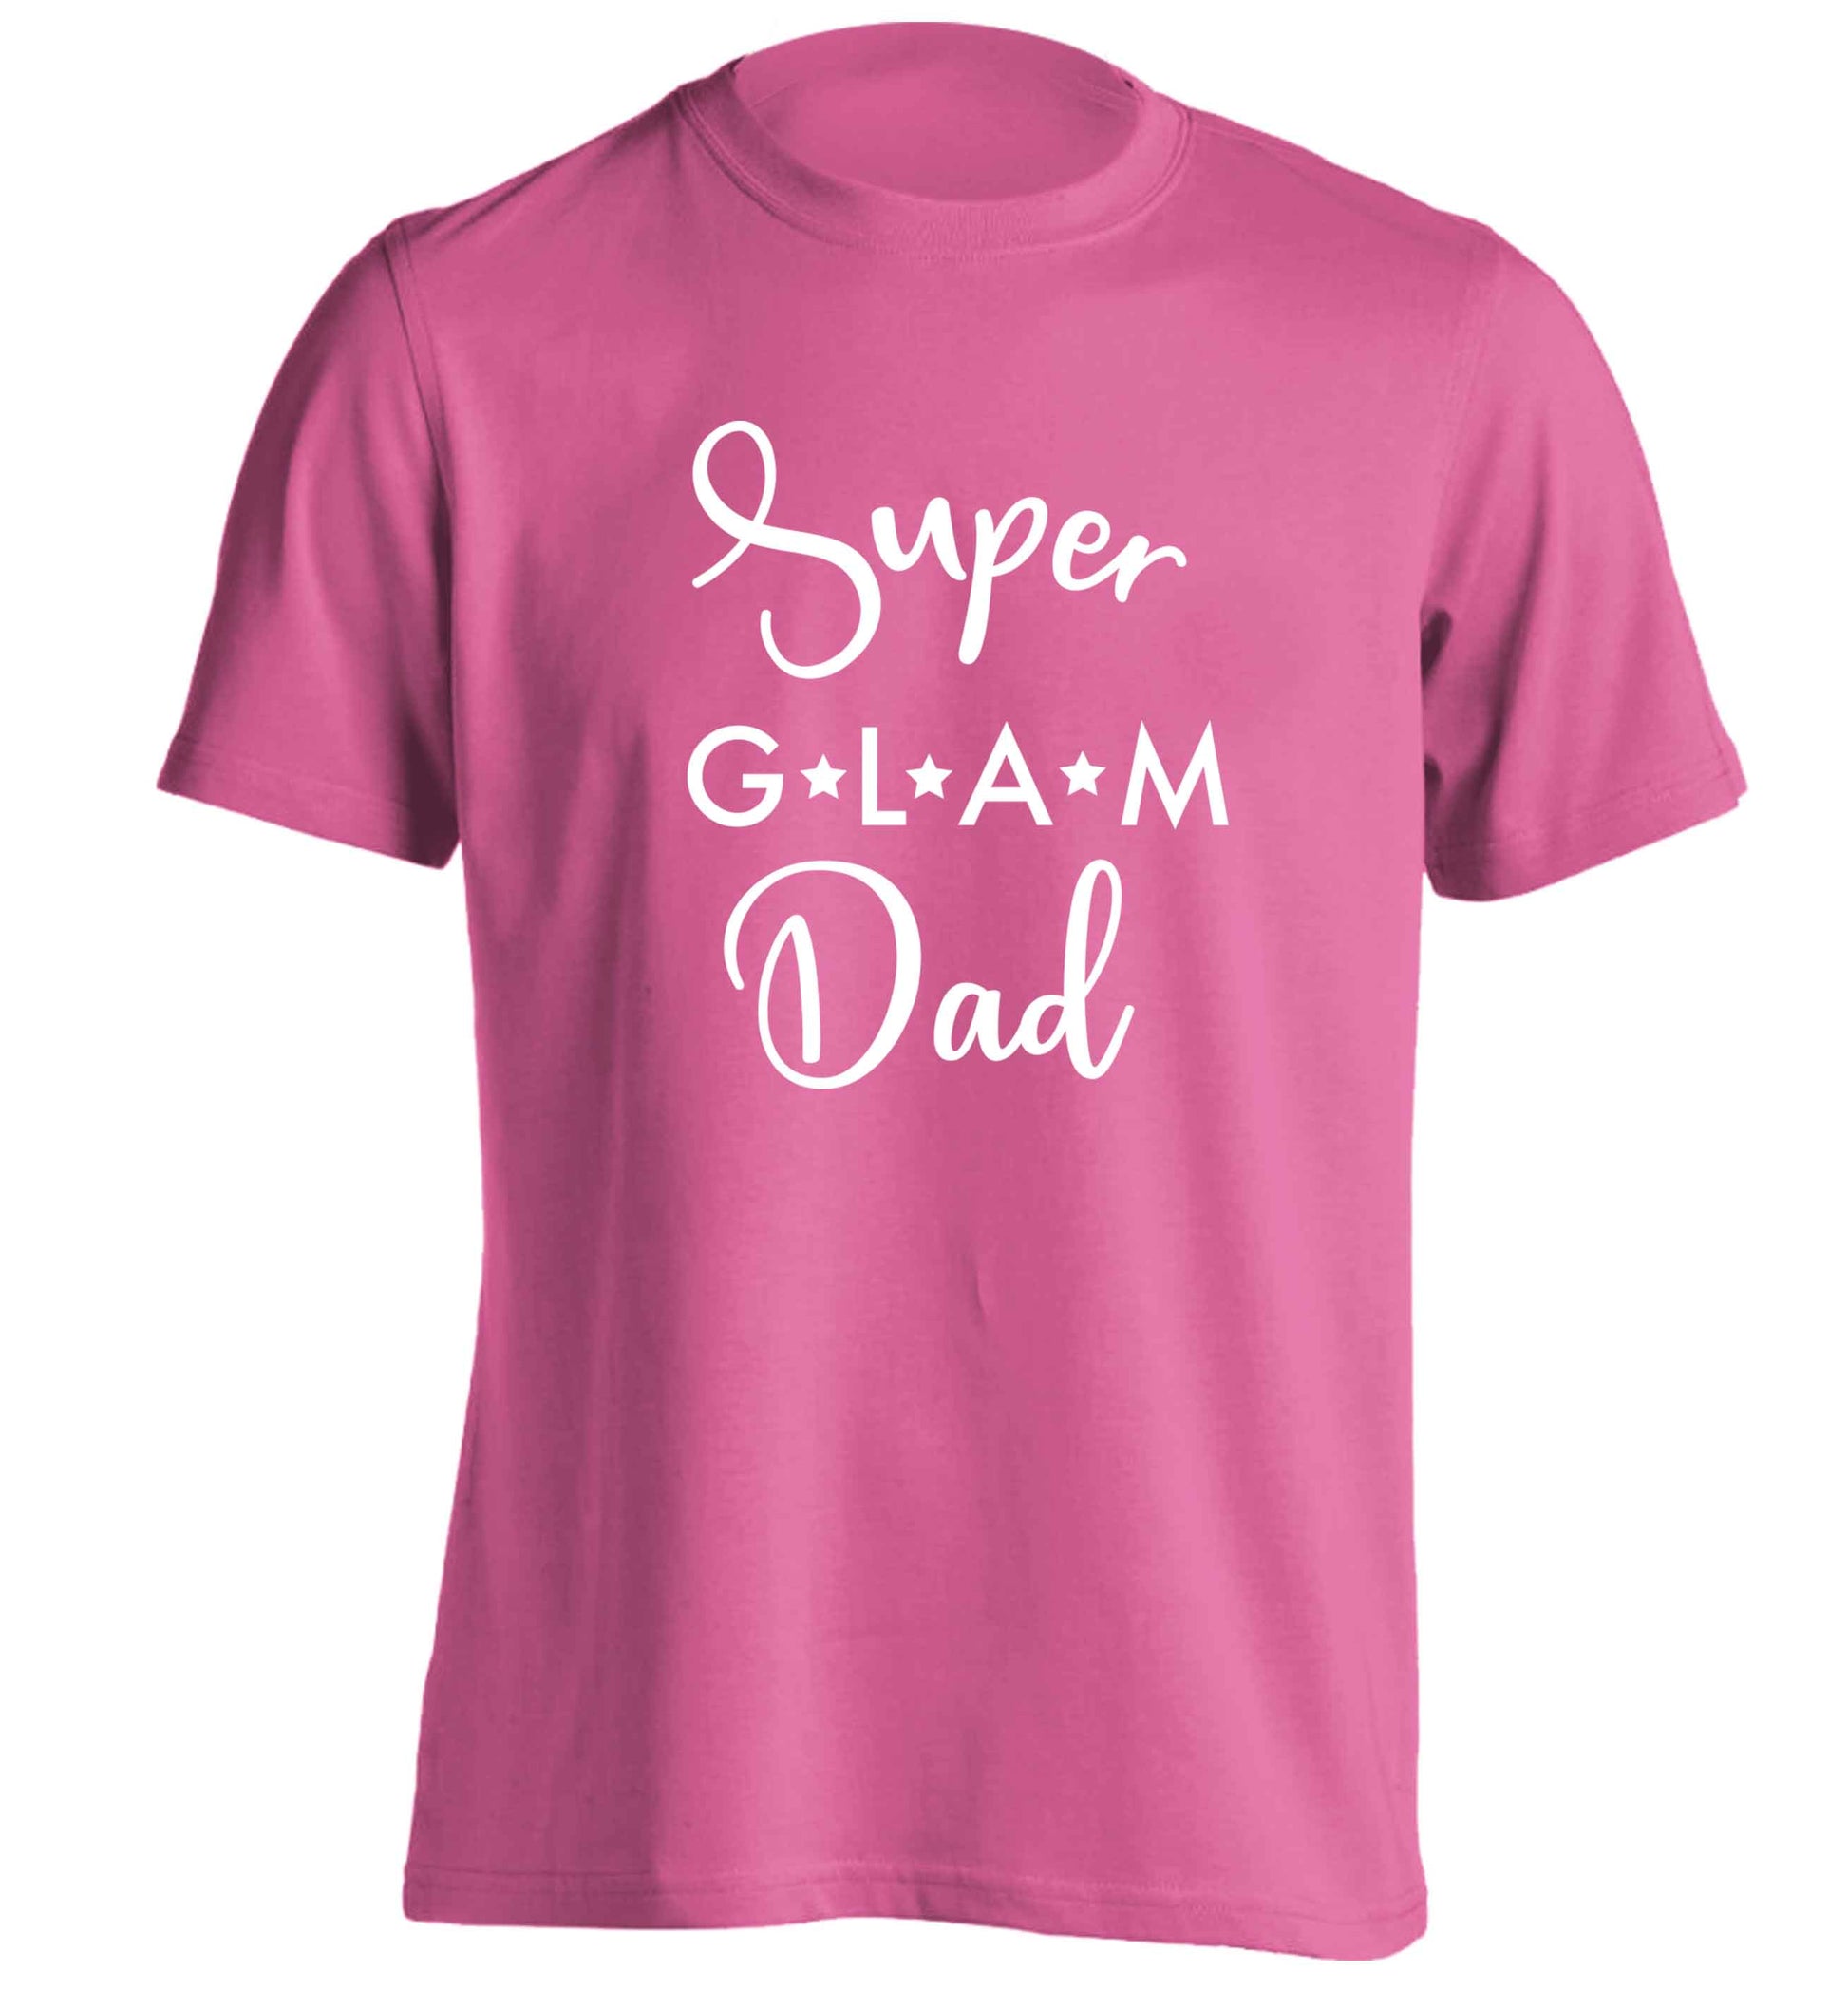 Super glam Dad adults unisex pink Tshirt 2XL